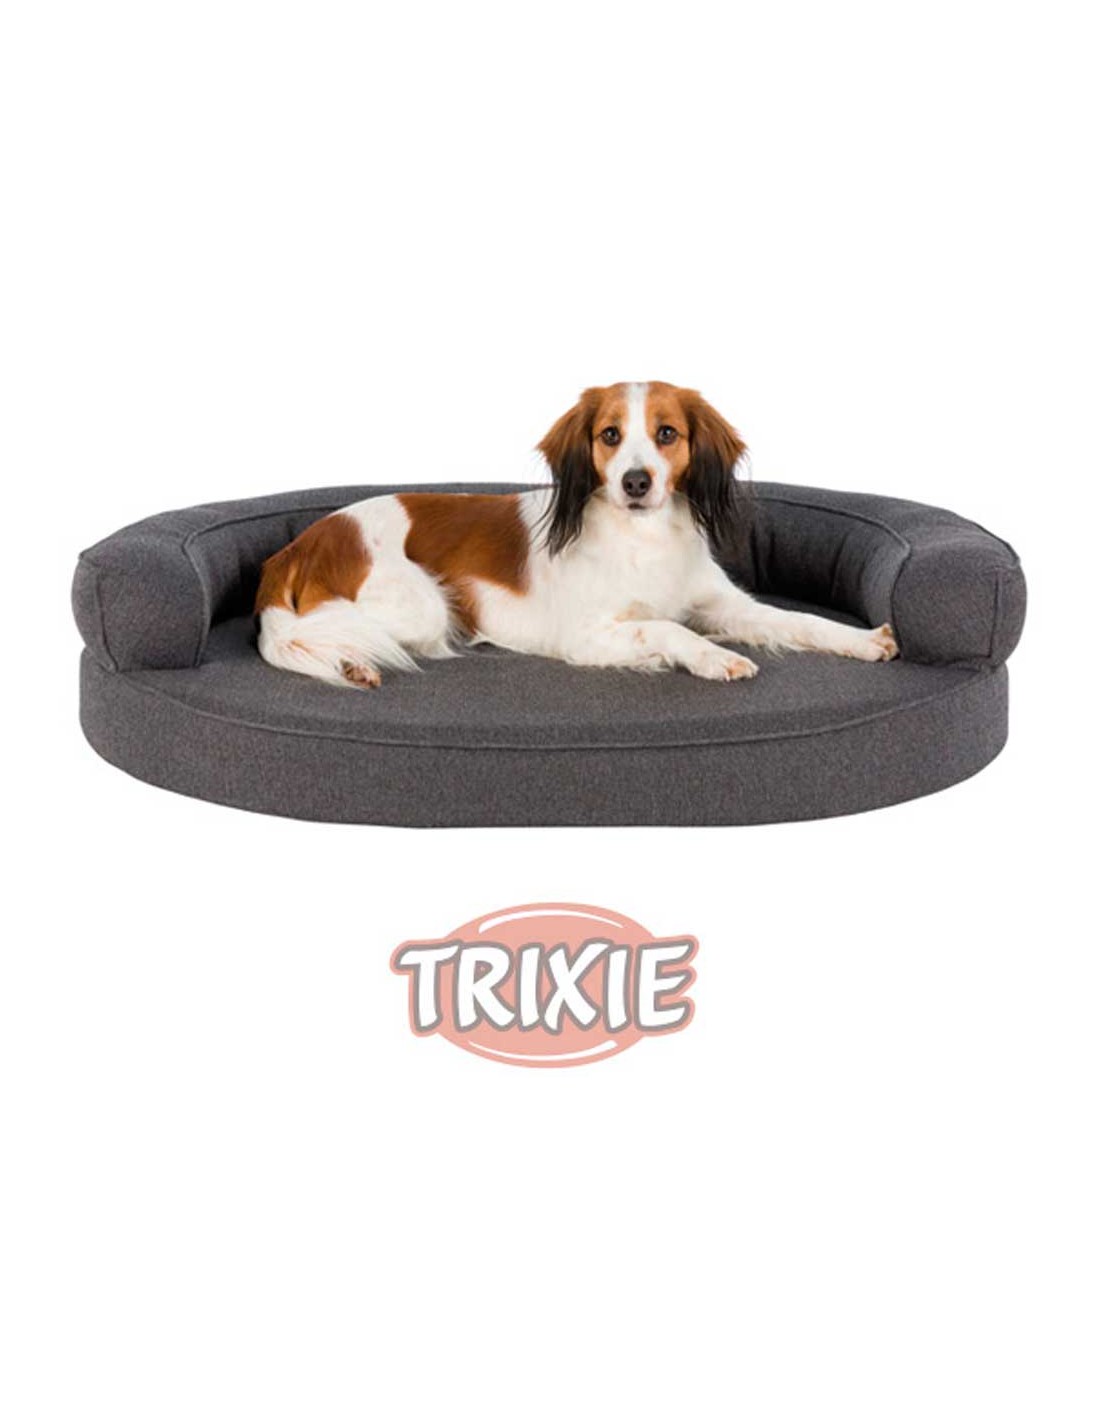 Oculto He reconocido Escarpa sofá para perro en tela de color gris de Trixie